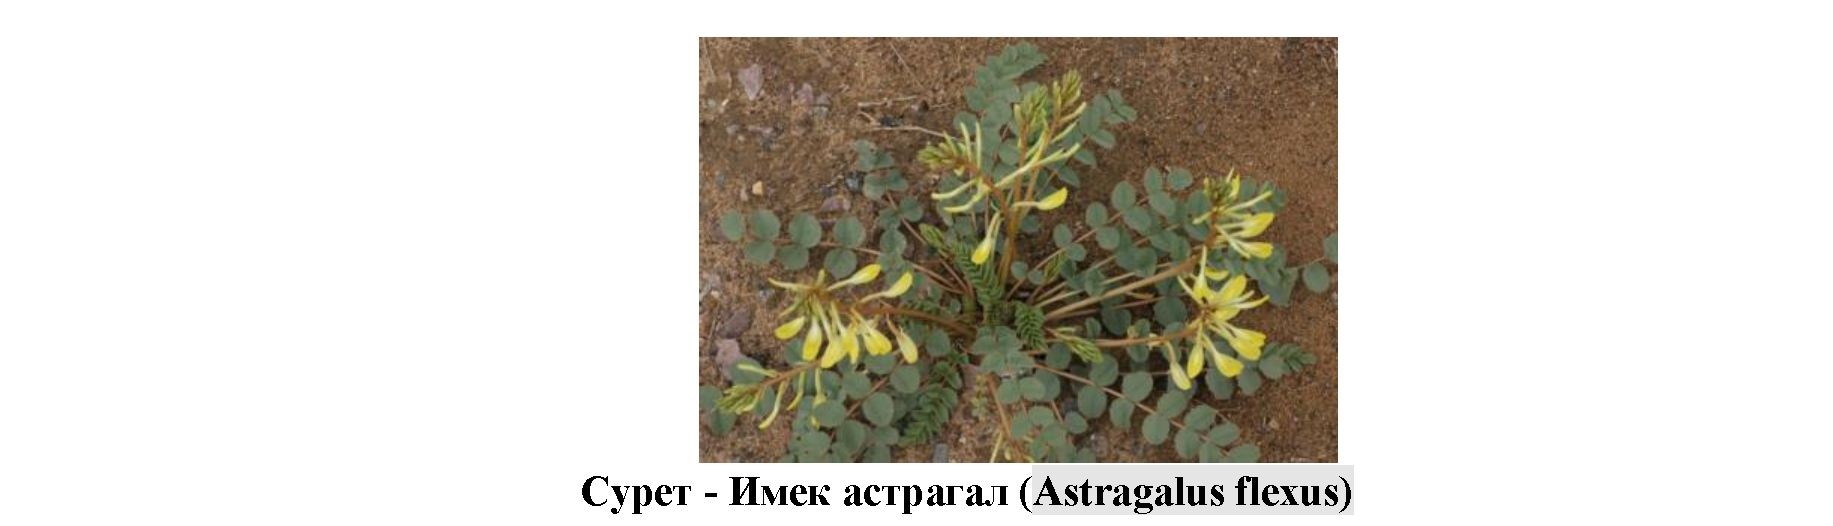 Astragalus flexus өсімдігінің жер үсті бөлігін фармакогностикалық зерттеу